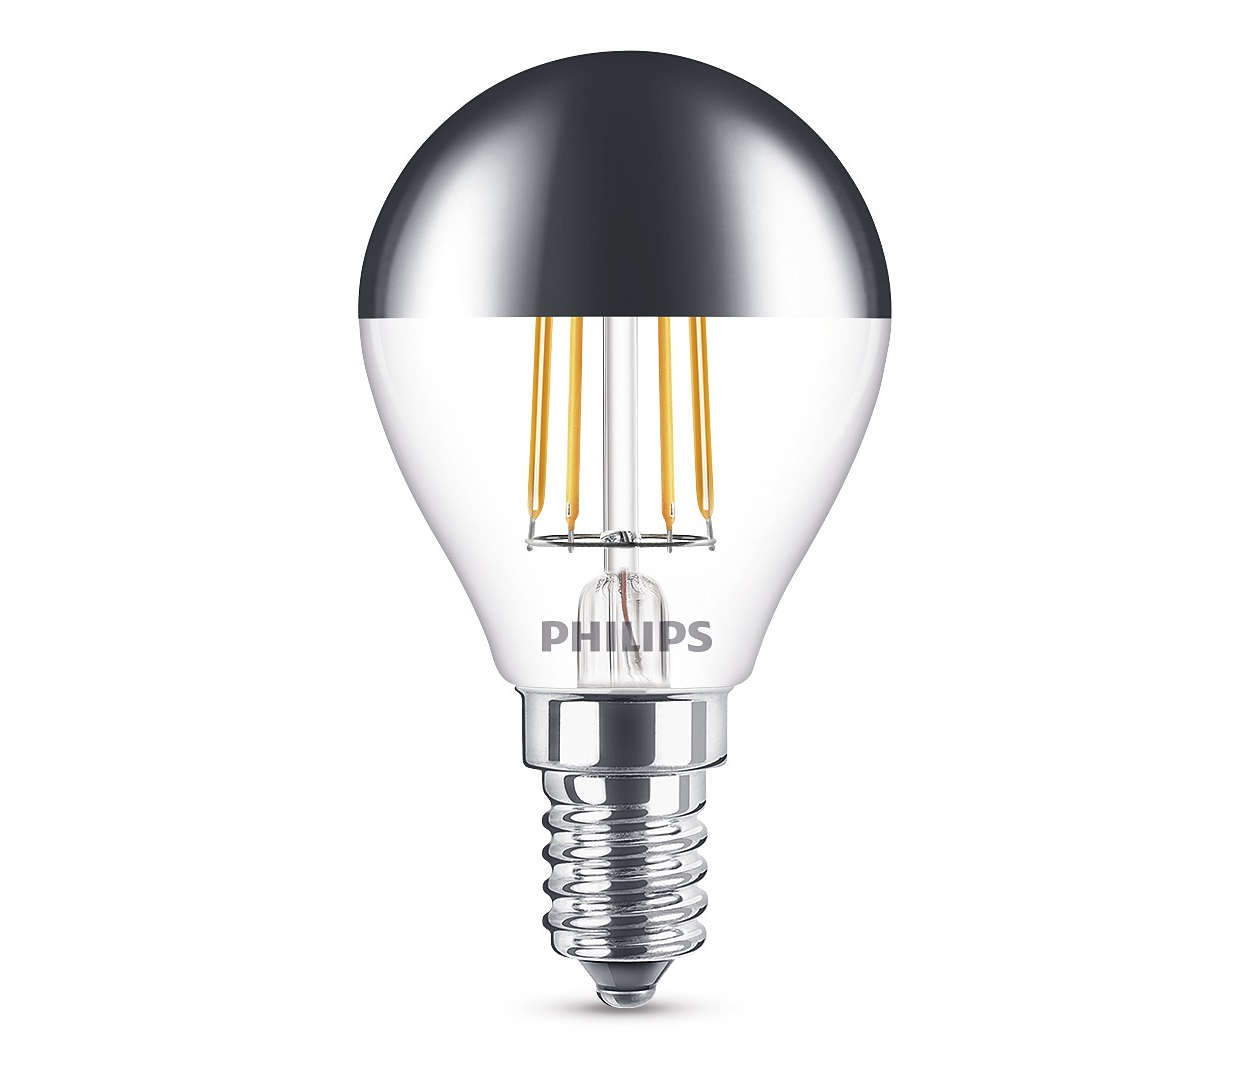 Treble Verbonden vragen Philips CLA E14 LED Kopspiegellamp 4-35W P45 827 Warm Wit